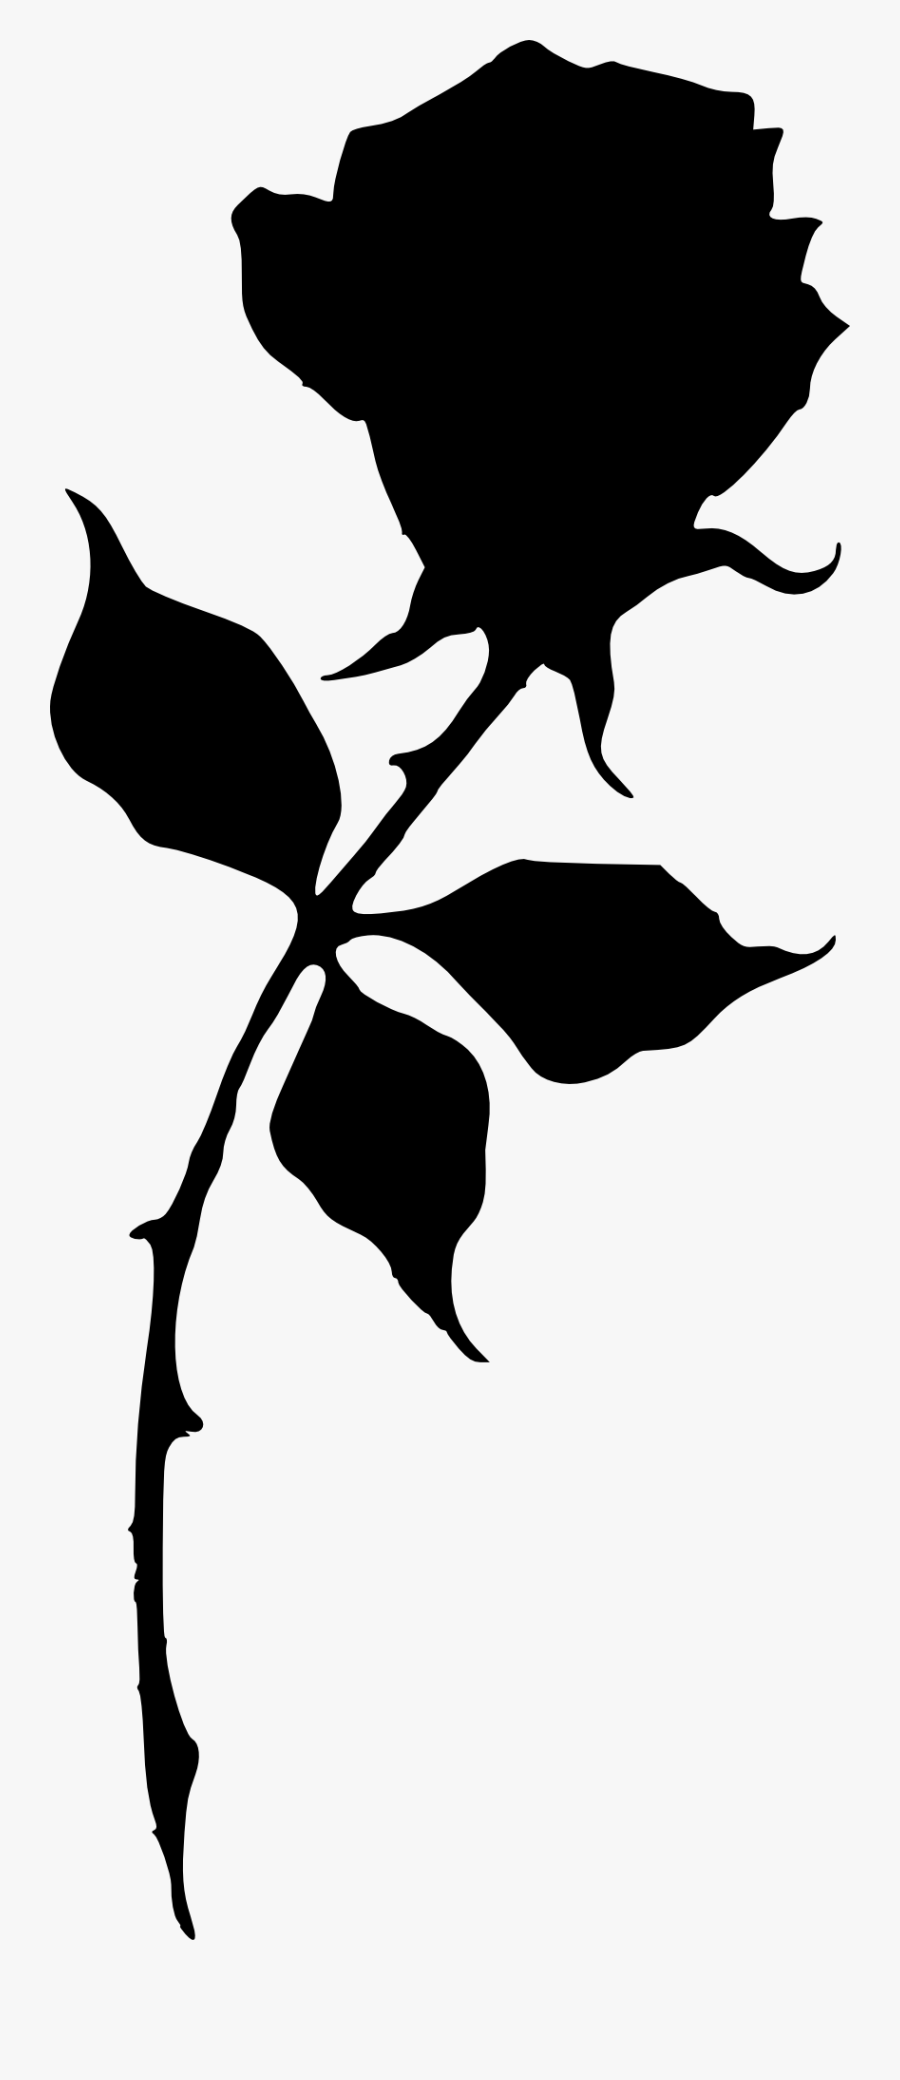 842 × 2000 Px - Clip Art Rose Silhouette, Transparent Clipart